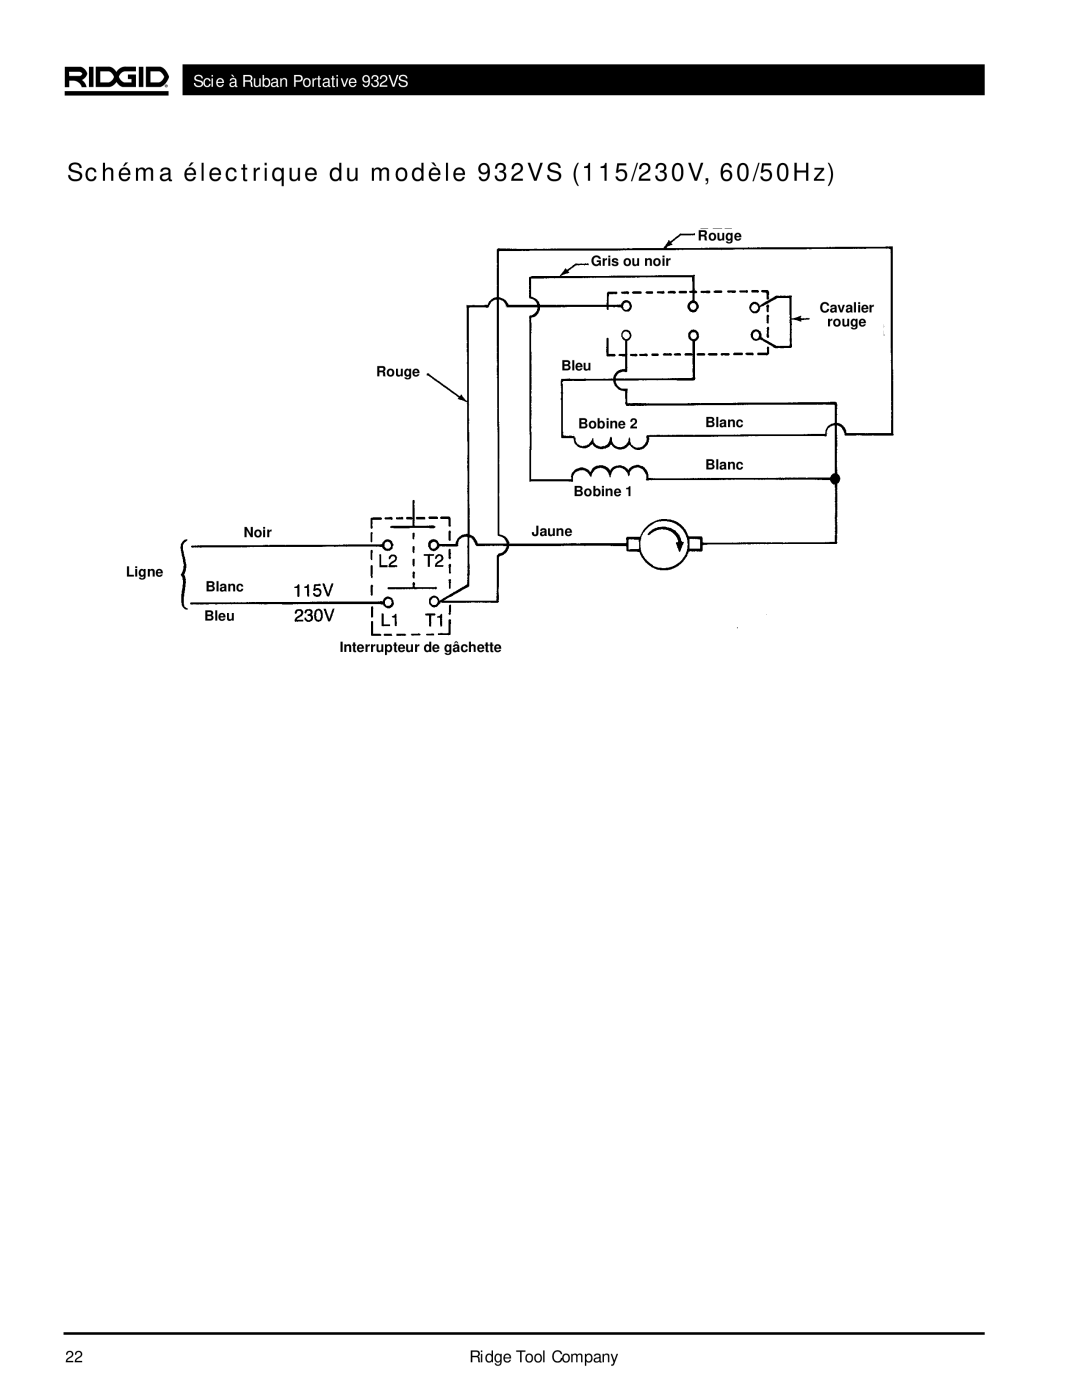 RIDGID Schéma électrique du modèle 932VS 115/230V, 60/50Hz, Scie à Ruban Portative 932VS, Blanc Bobine, Noir 